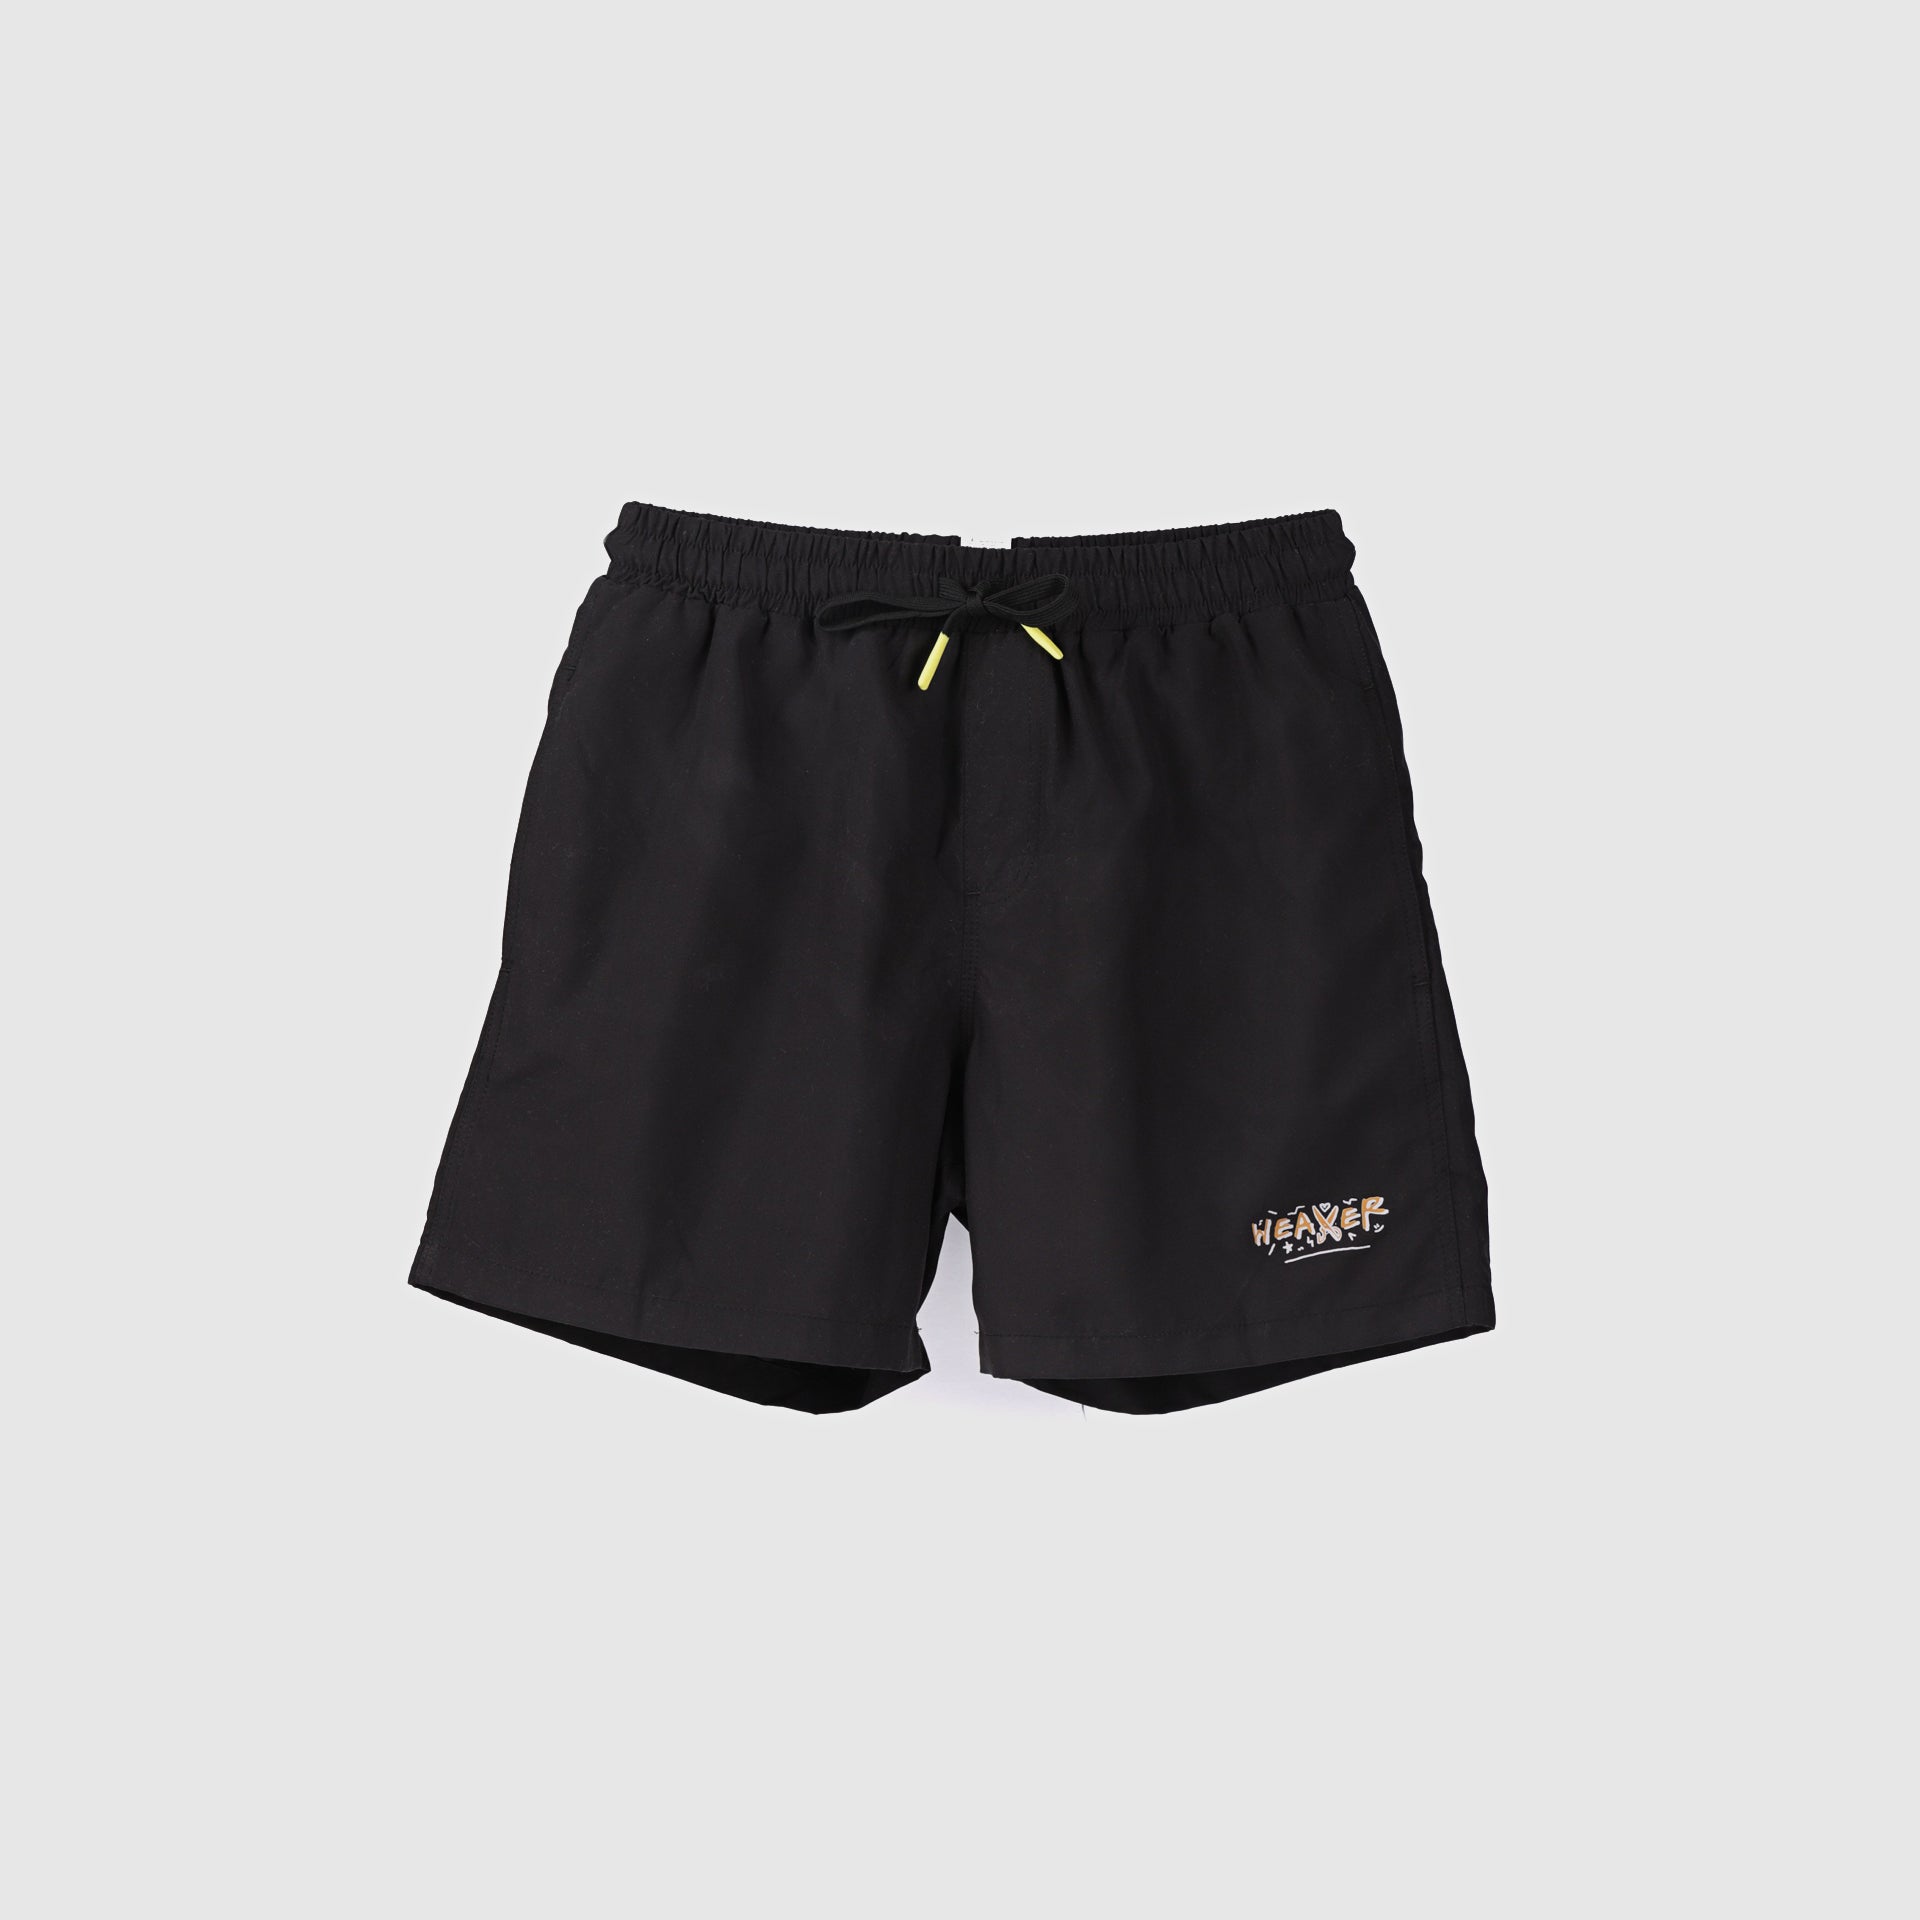 Black Swimming Plain Shorts From Weaver Design